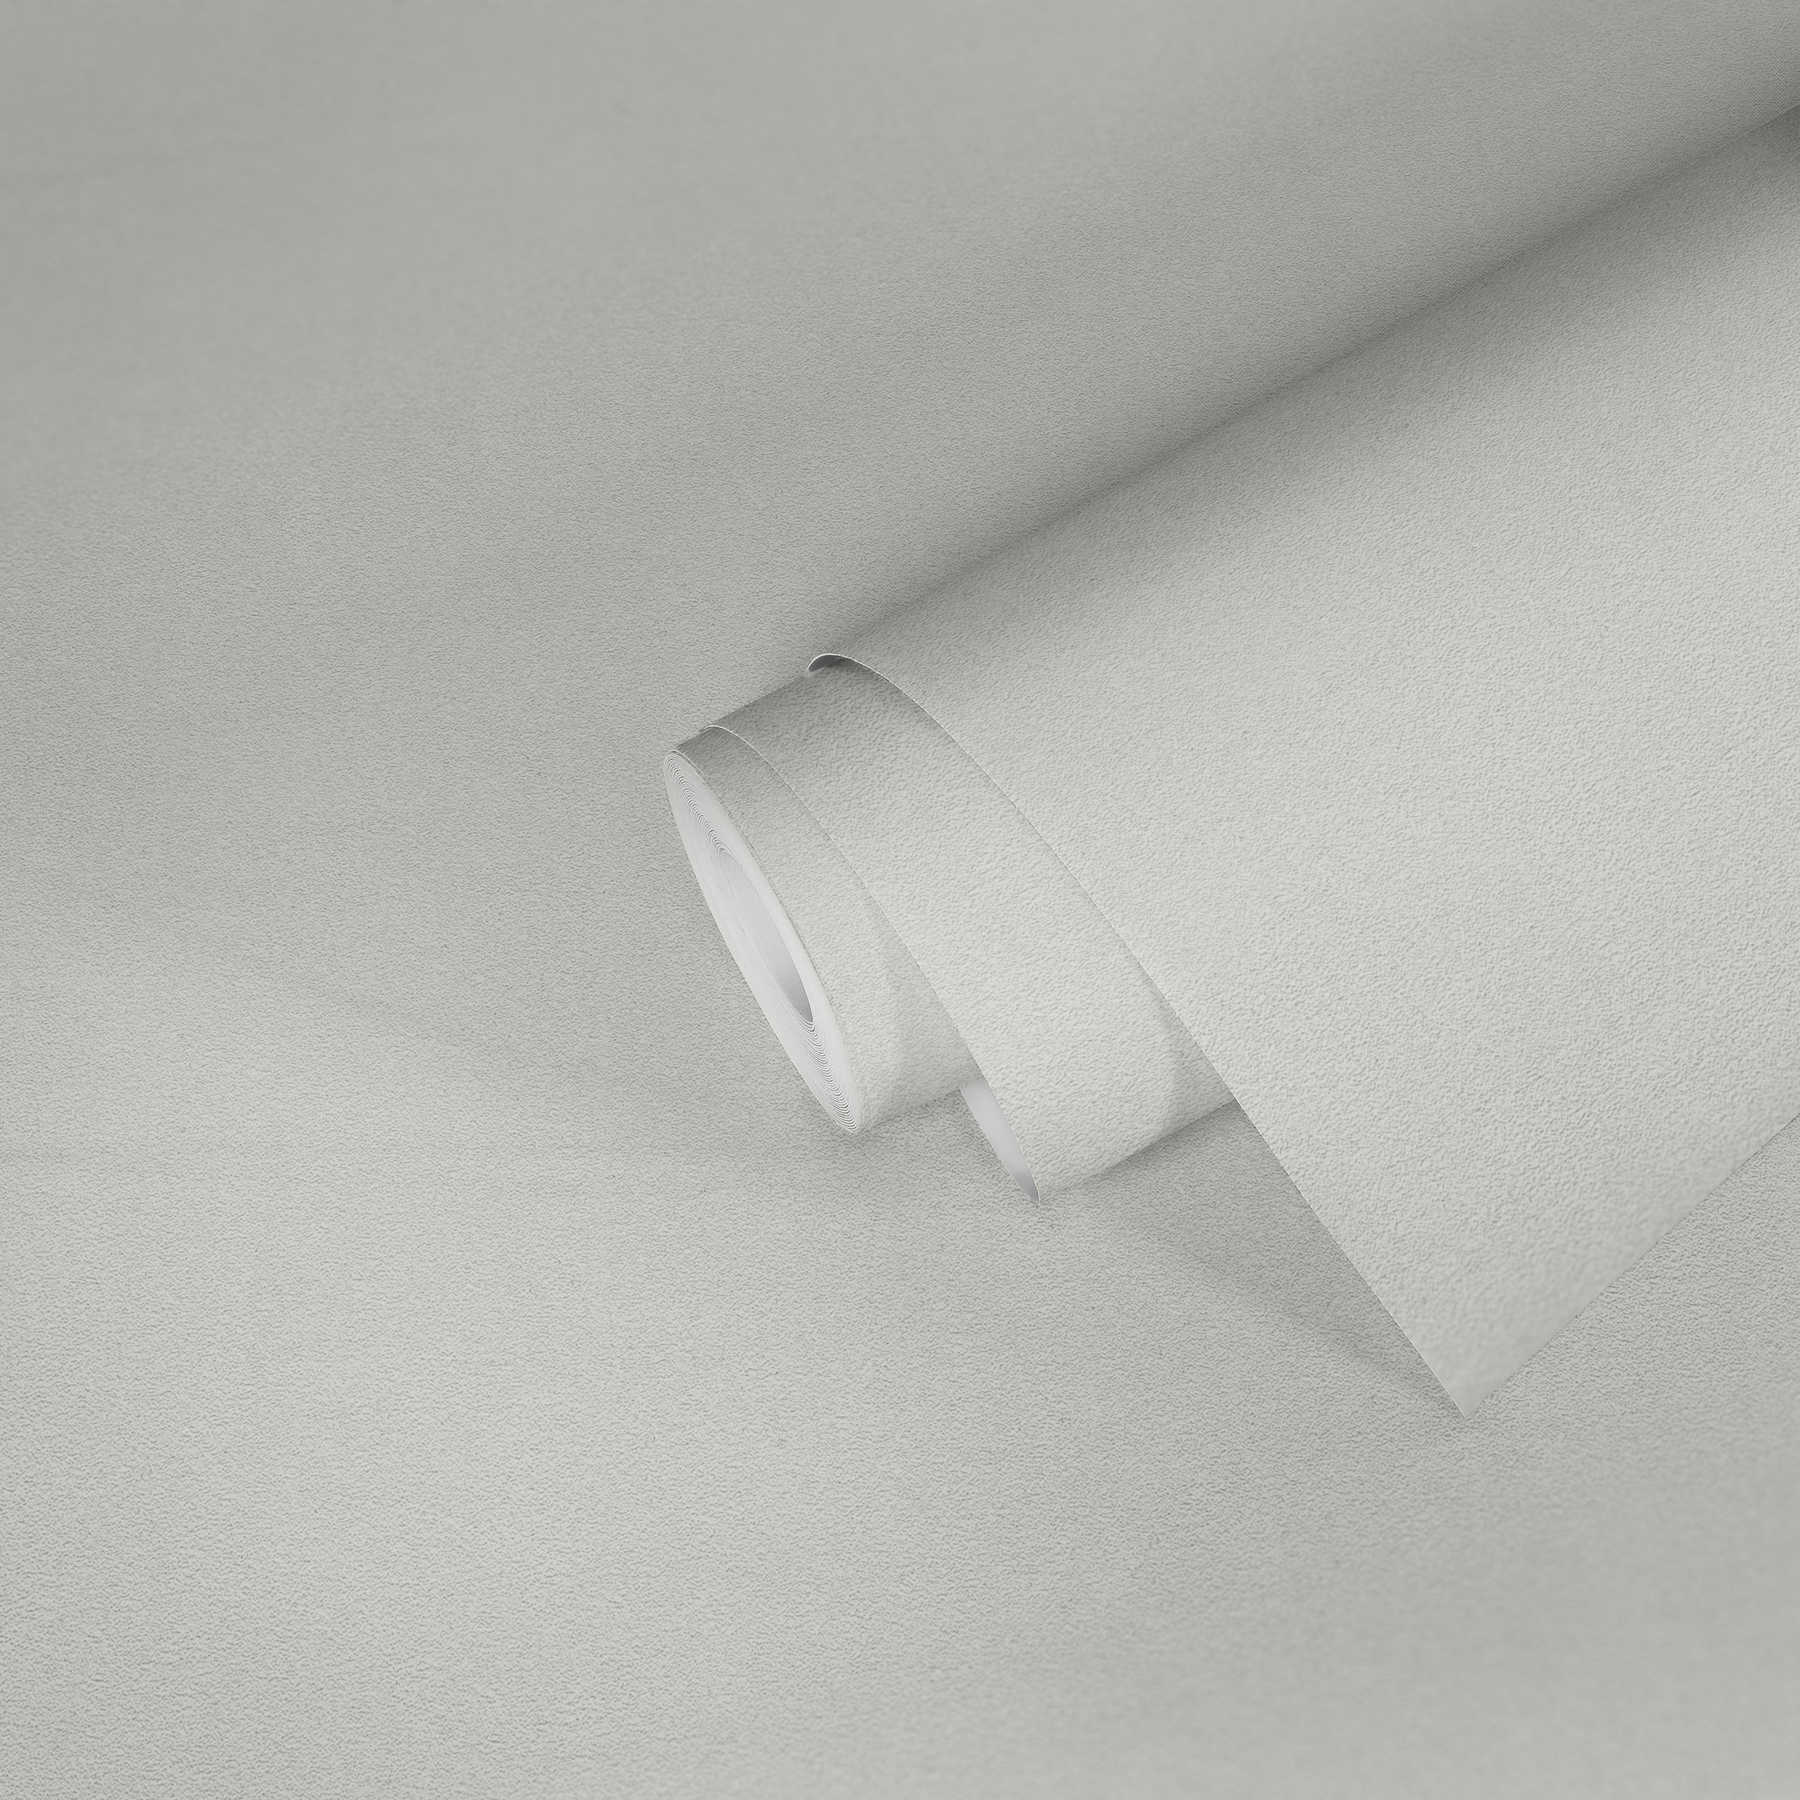             Unitapete mit Oberflächenstruktur & Glitzereffekt – Weiß
        